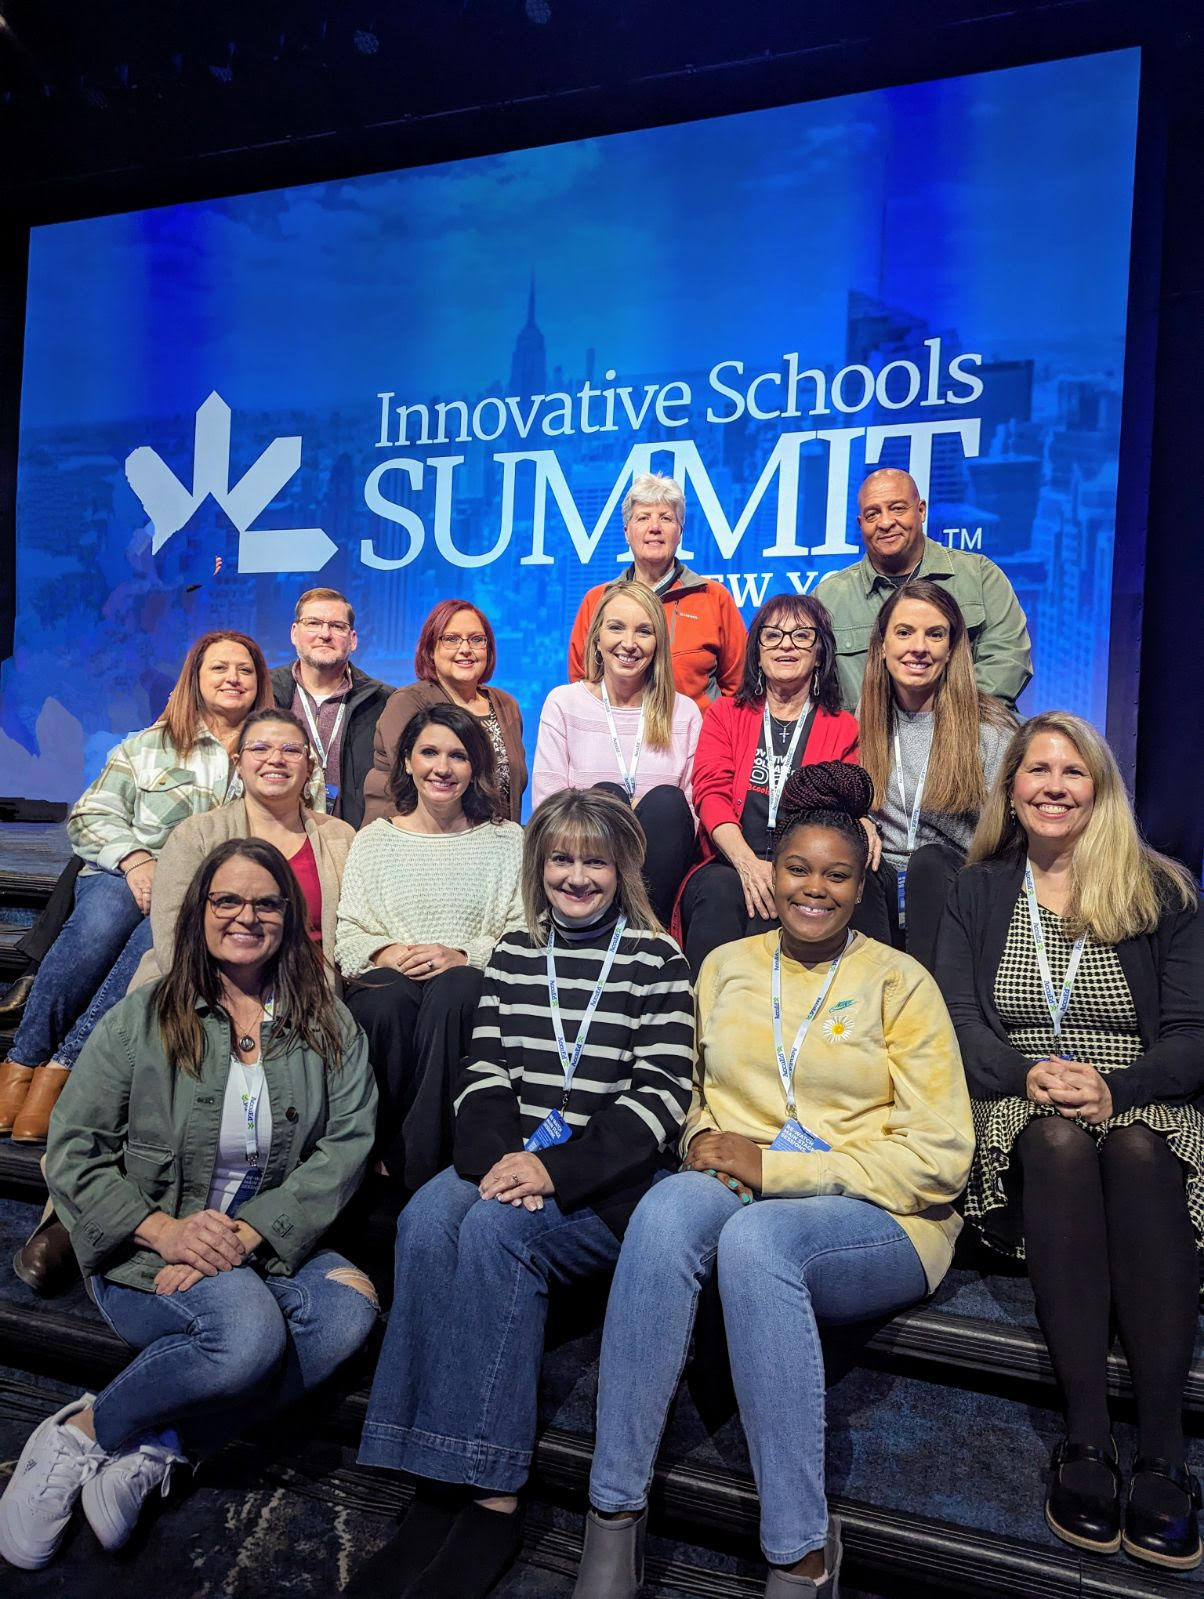 Innovative Schools Summit leaders